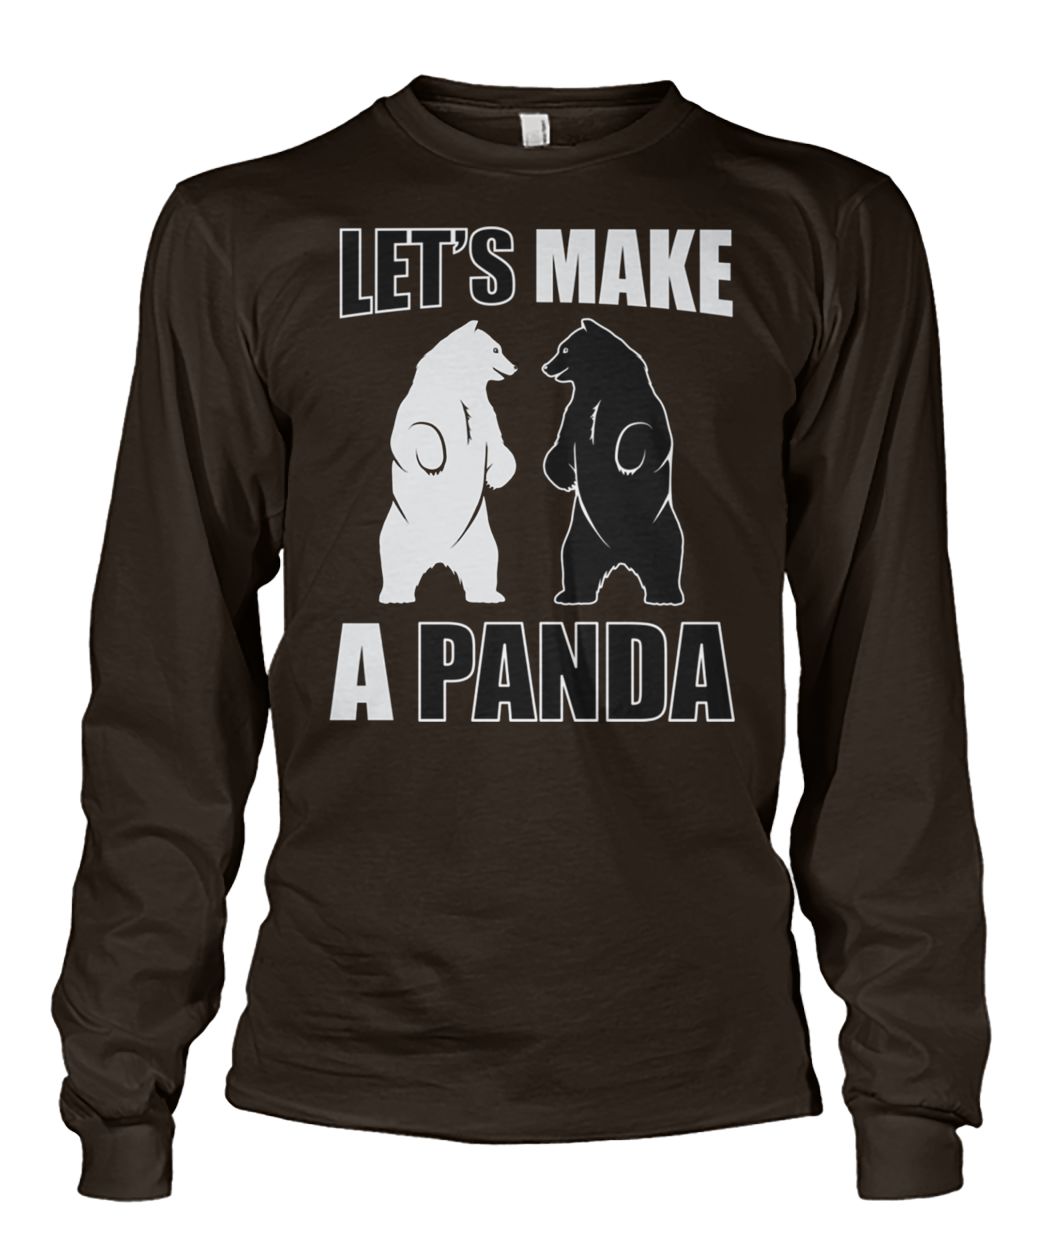 Let's make a panda unisex long sleeve